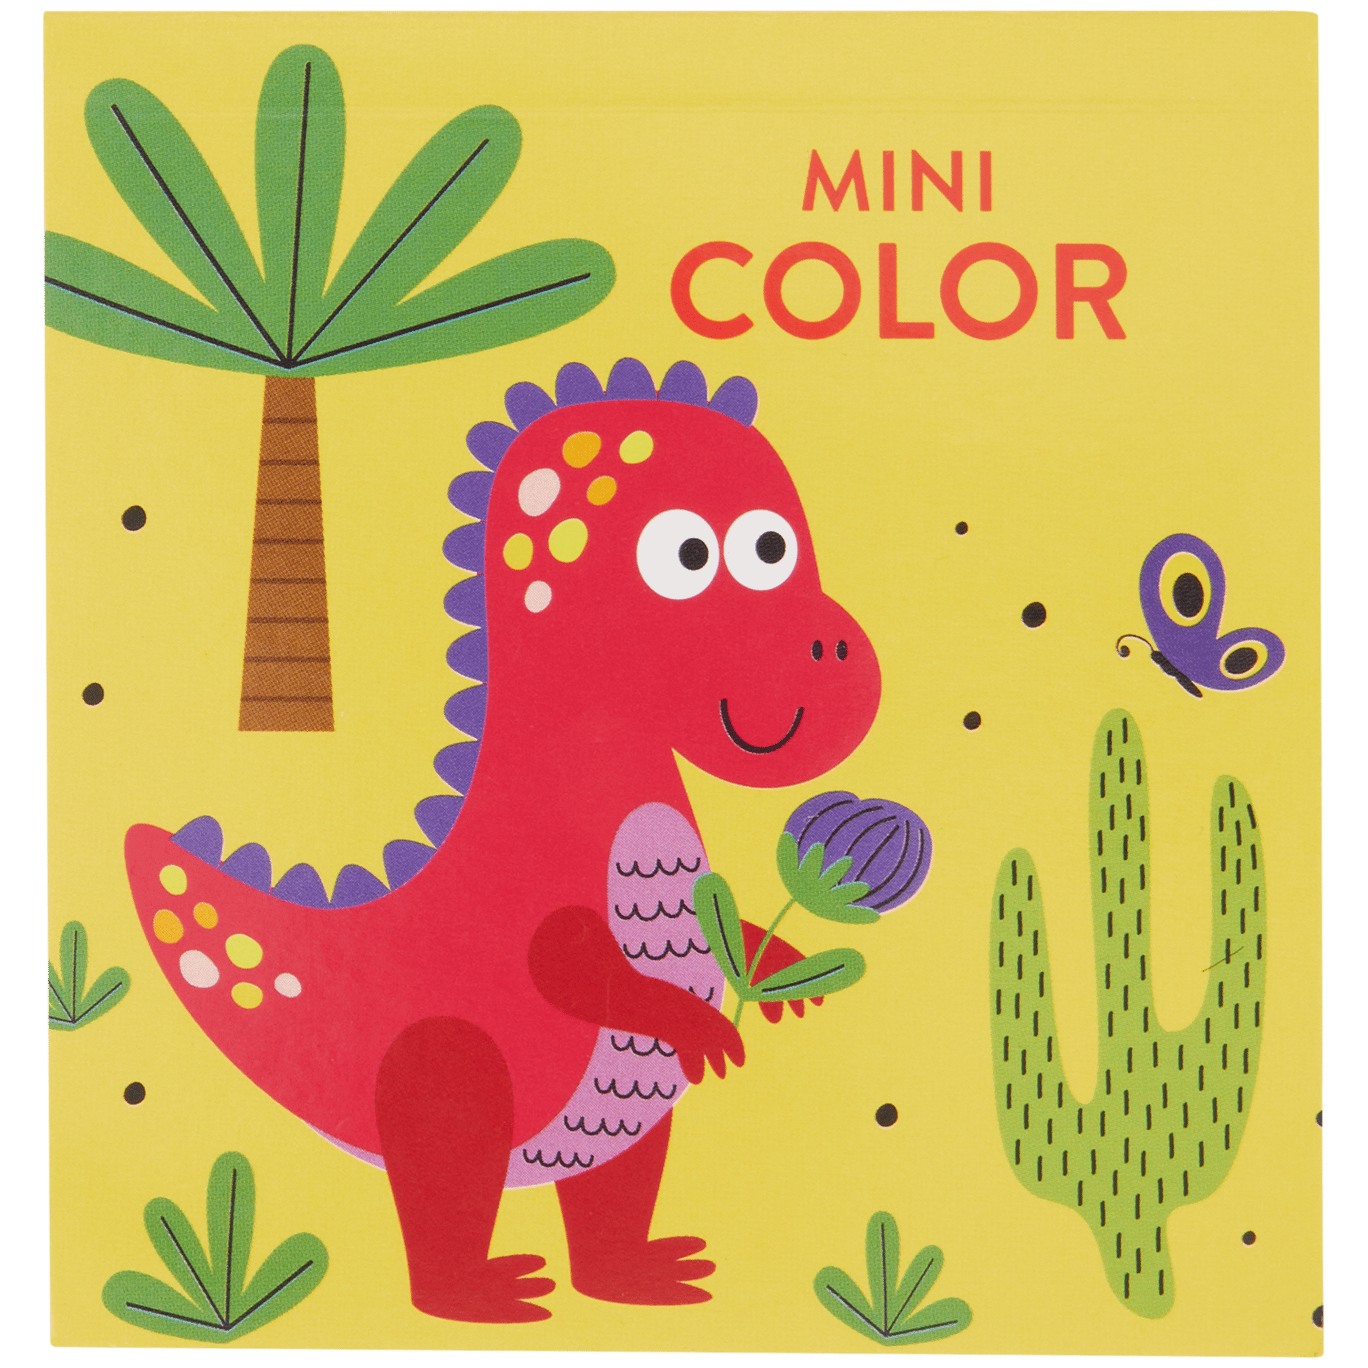 Mini livro de colorir